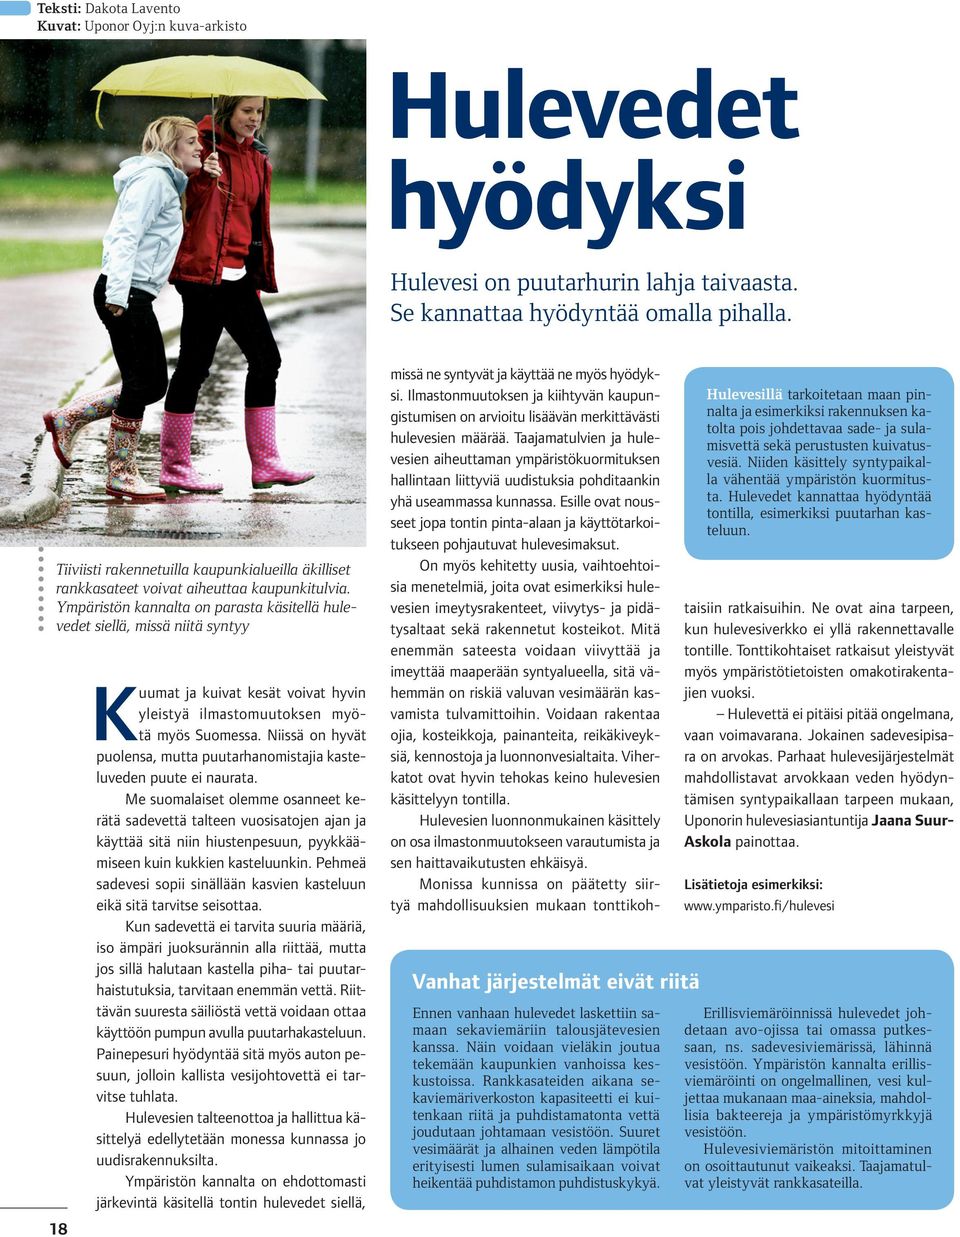 Ympäristön kannalta on parasta käsitellä hulevedet siellä, missä niitä syntyy 18 Kuumat ja kuivat kesät voivat hyvin yleistyä ilmastomuutoksen myötä myös Suomessa.